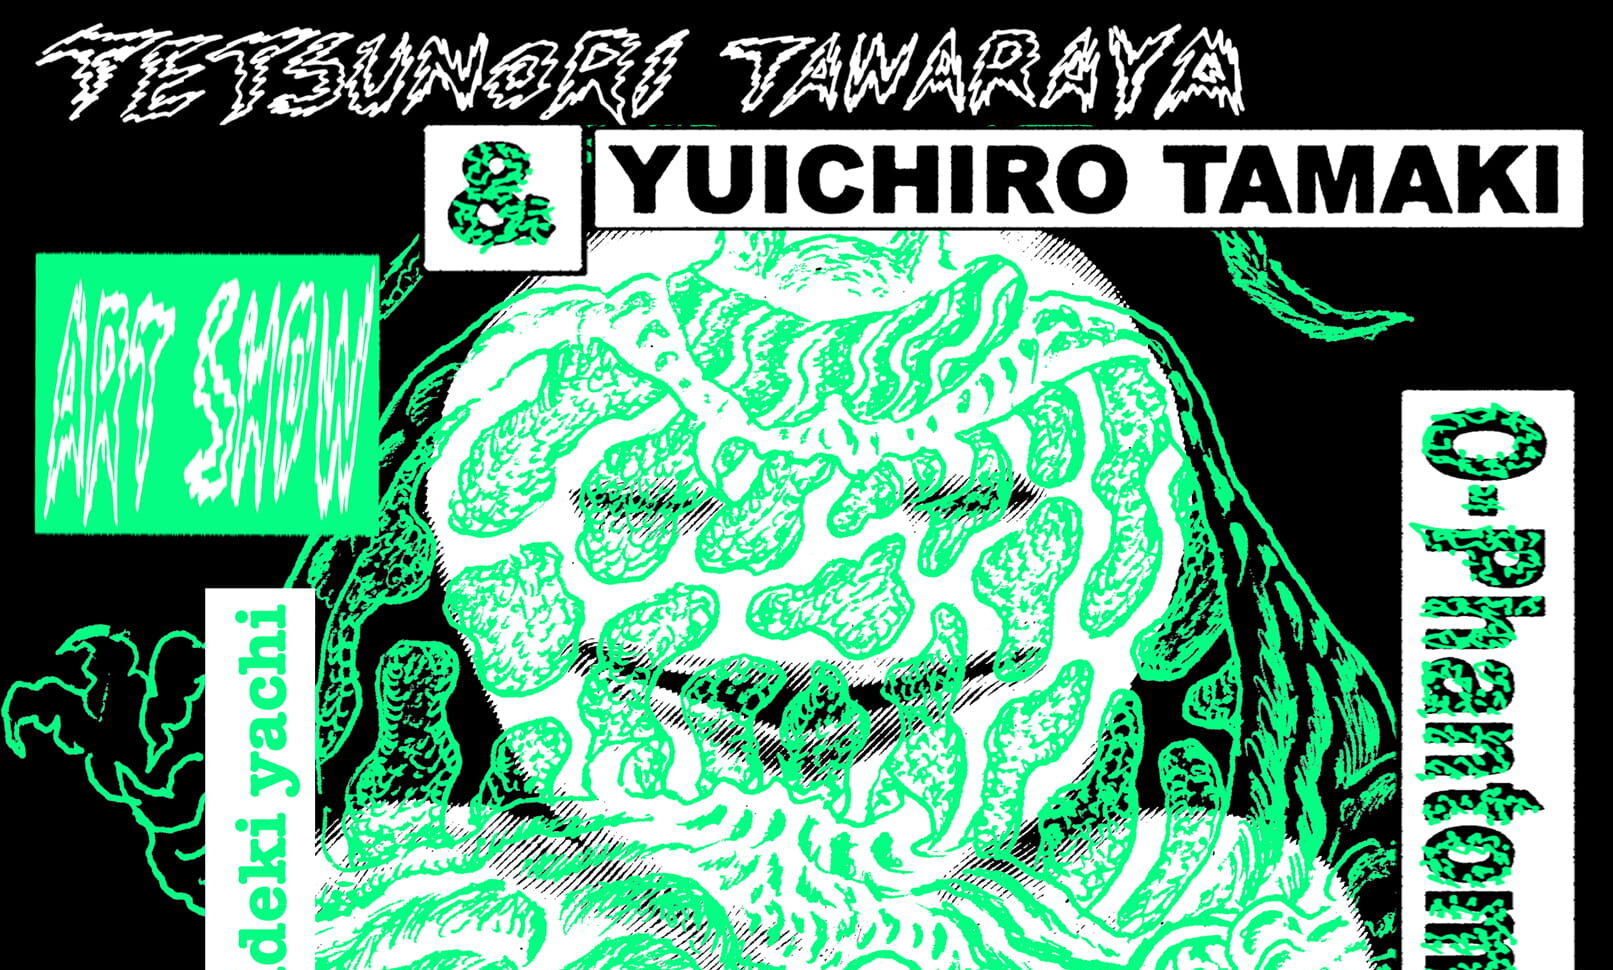 Tetsunori Tawaraya × Yuichiro Tamakiによる二人展が開催